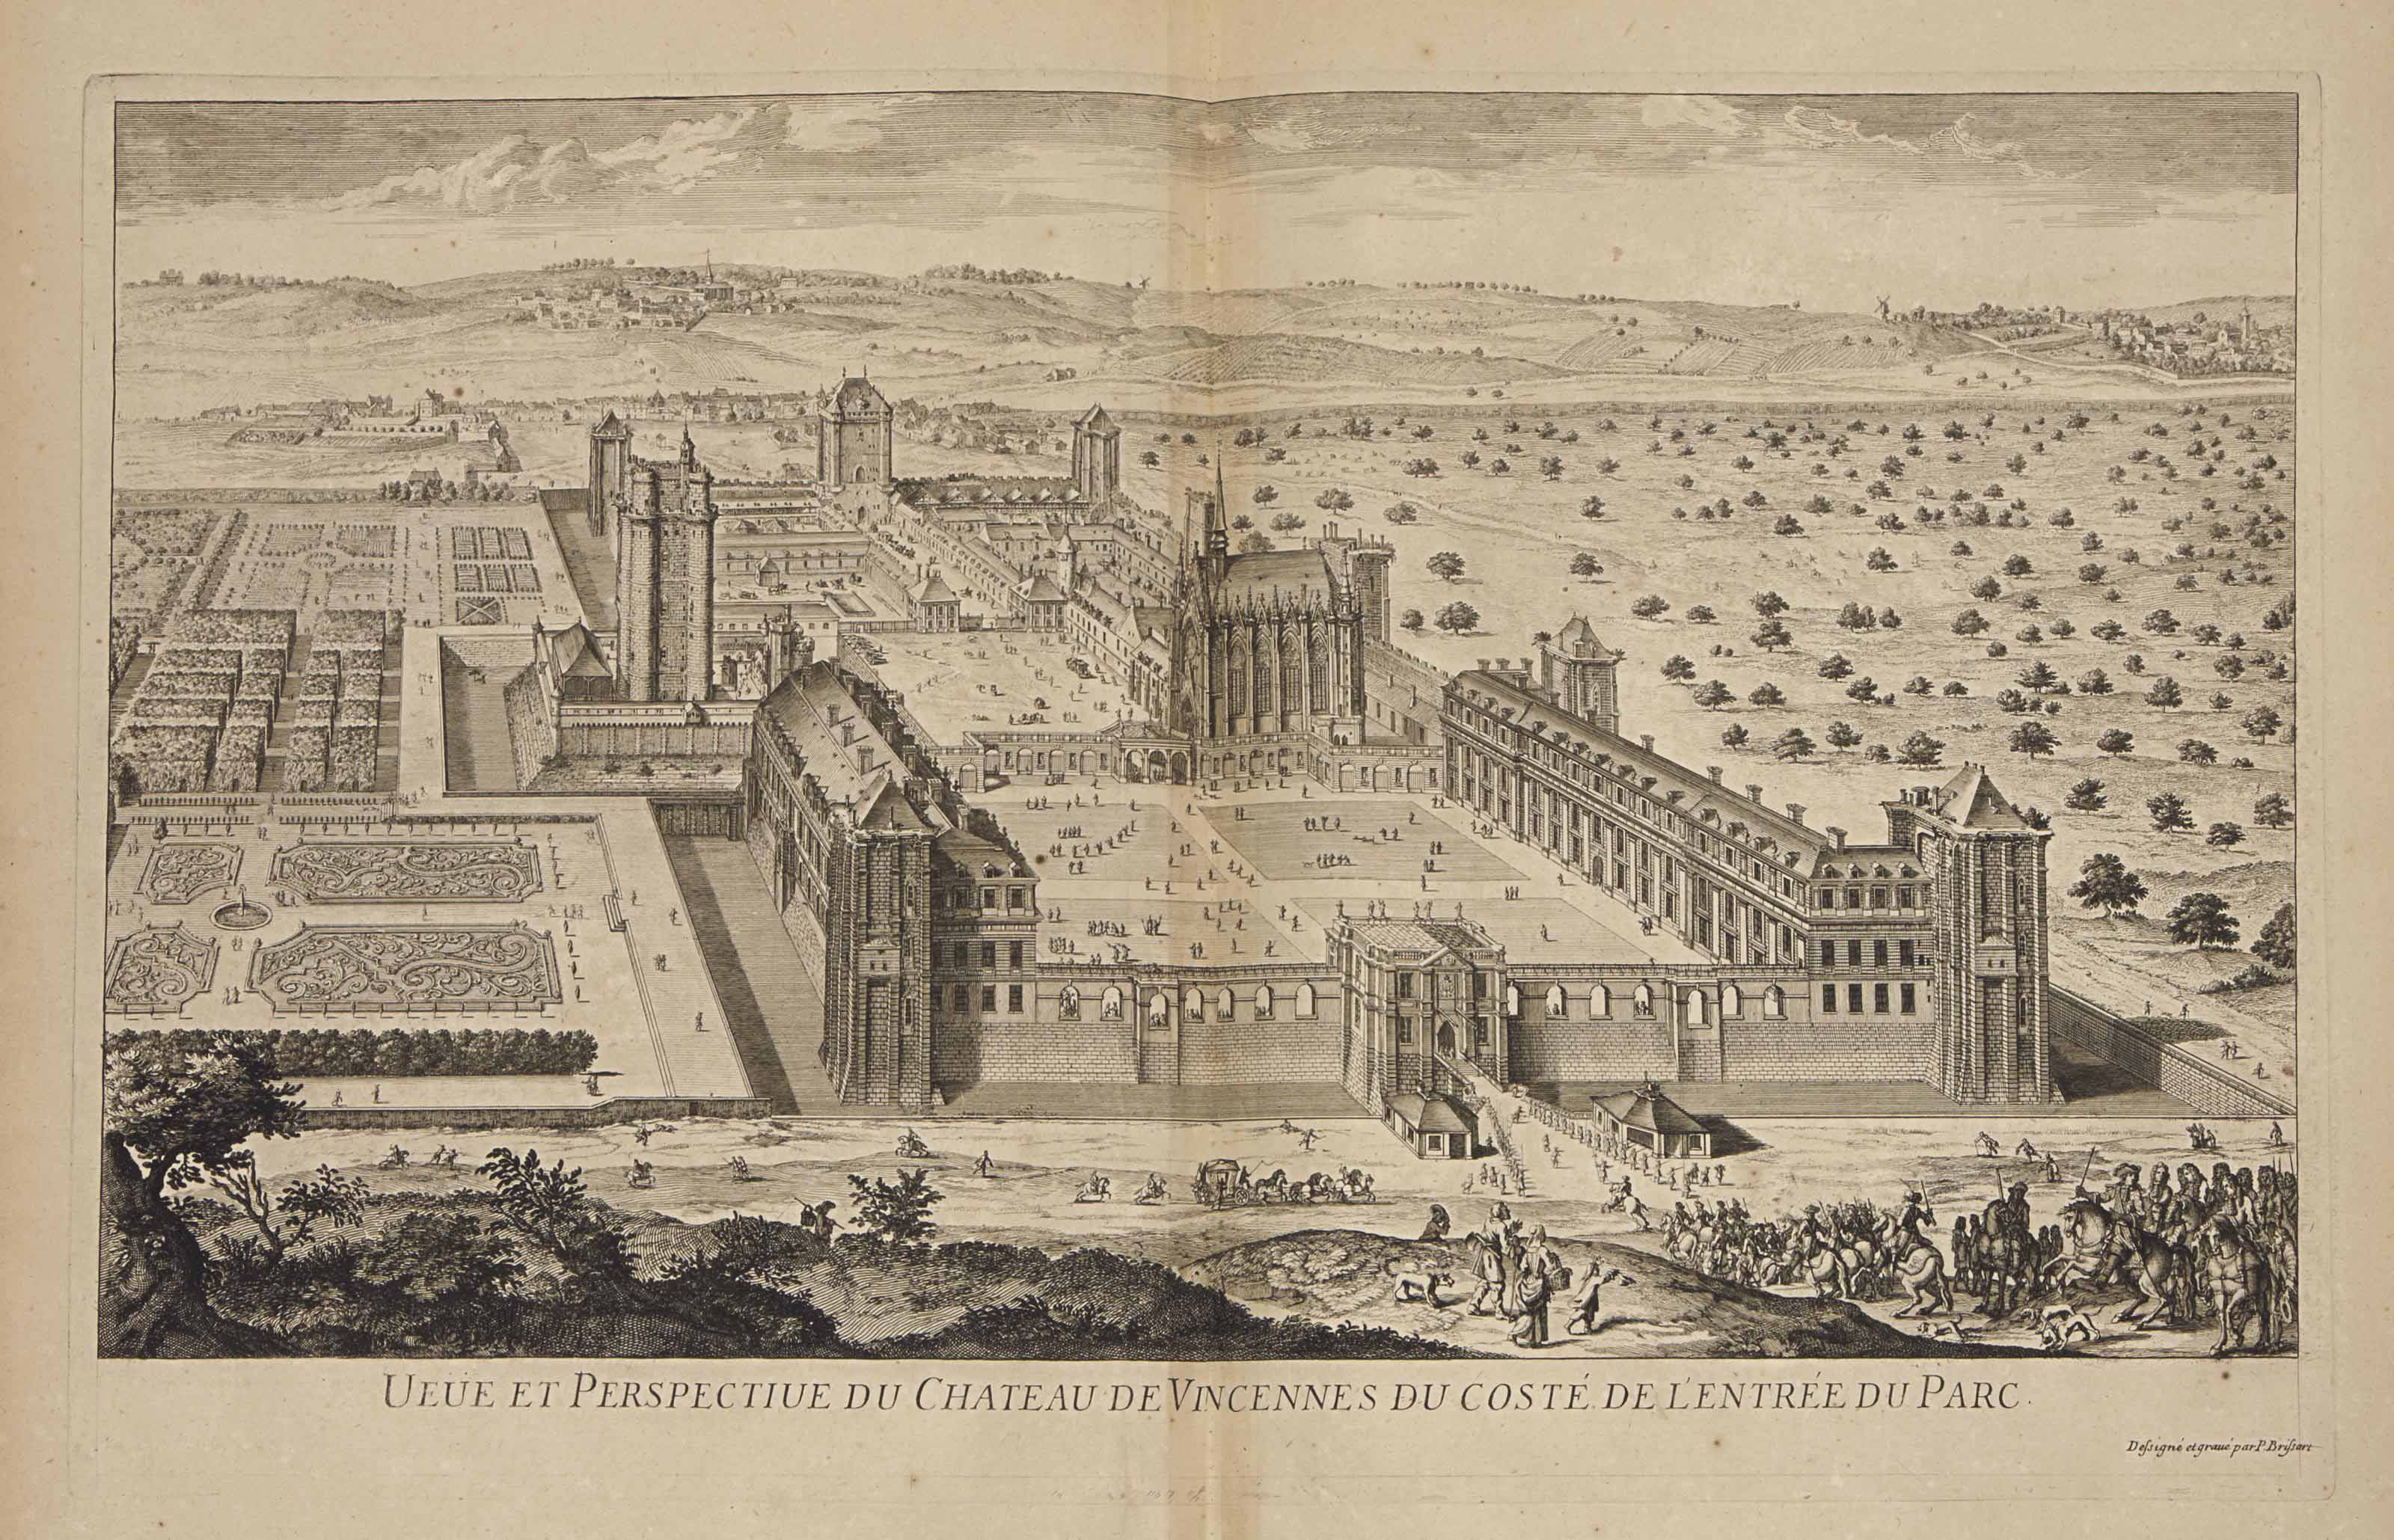 Israël Silvestre : Veüe et Perspective du Chateau de Vincennes du costé de l'entrée du Parc.